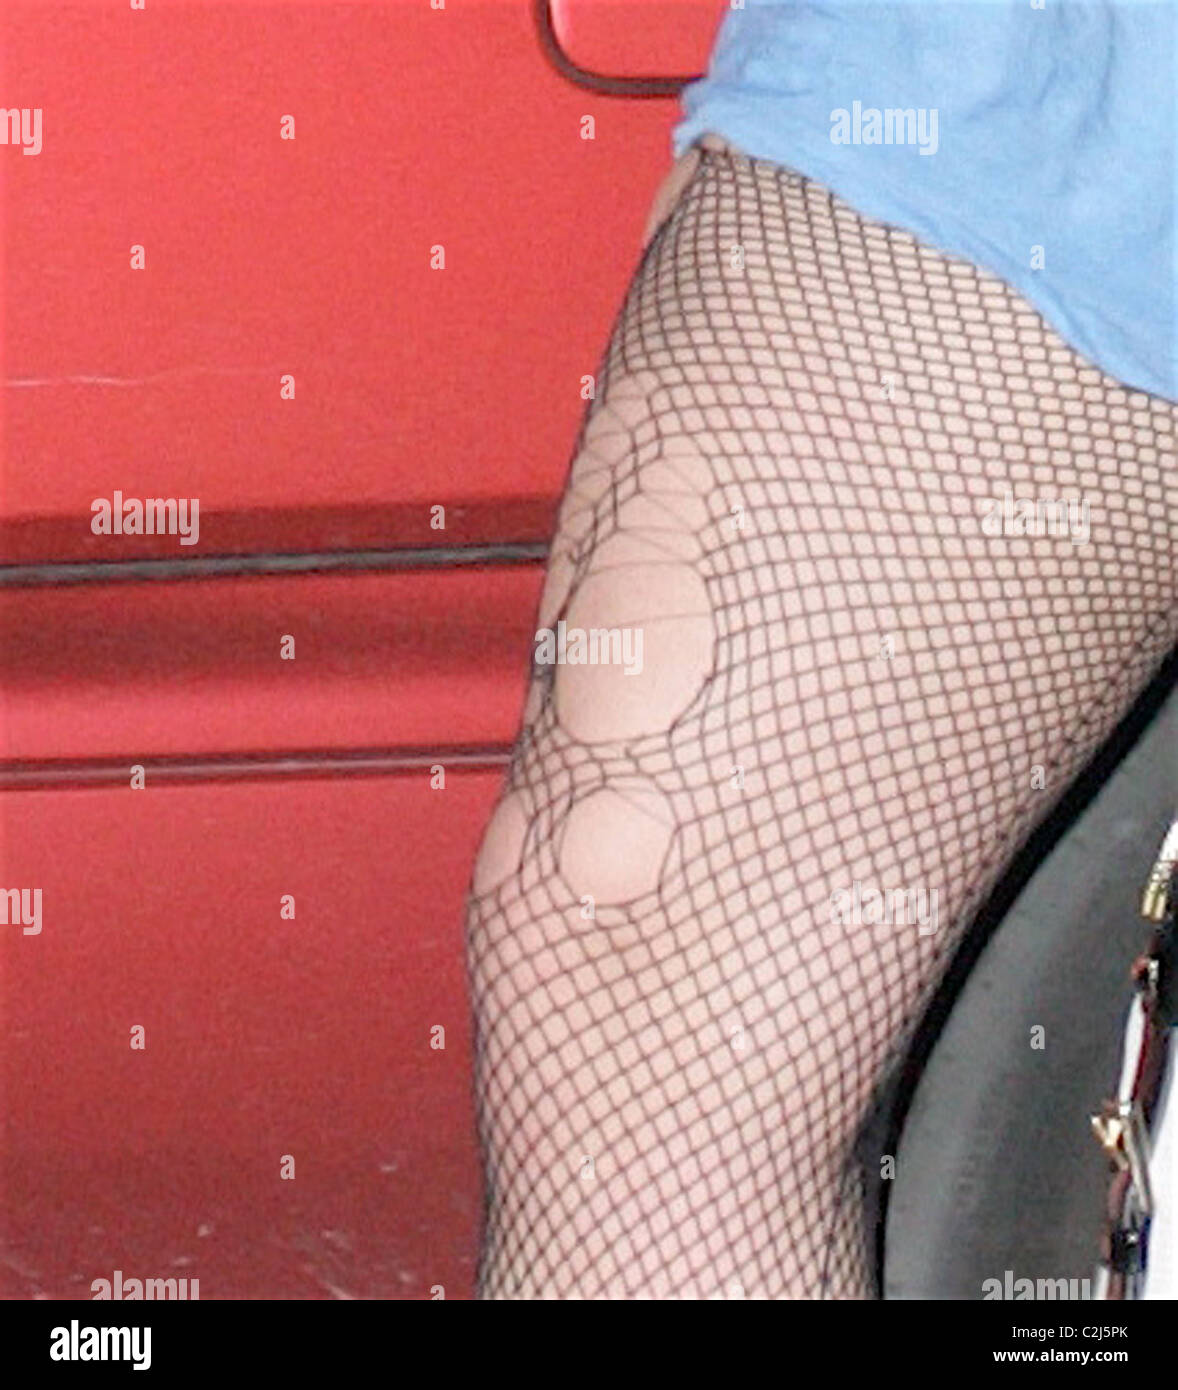 Britney Spears verlassen ein Tanz Studio tragen zerrissene Netzstrümpfe  Strümpfe Los Angeles, Kalifornien - 08.02.08 Stockfotografie - Alamy